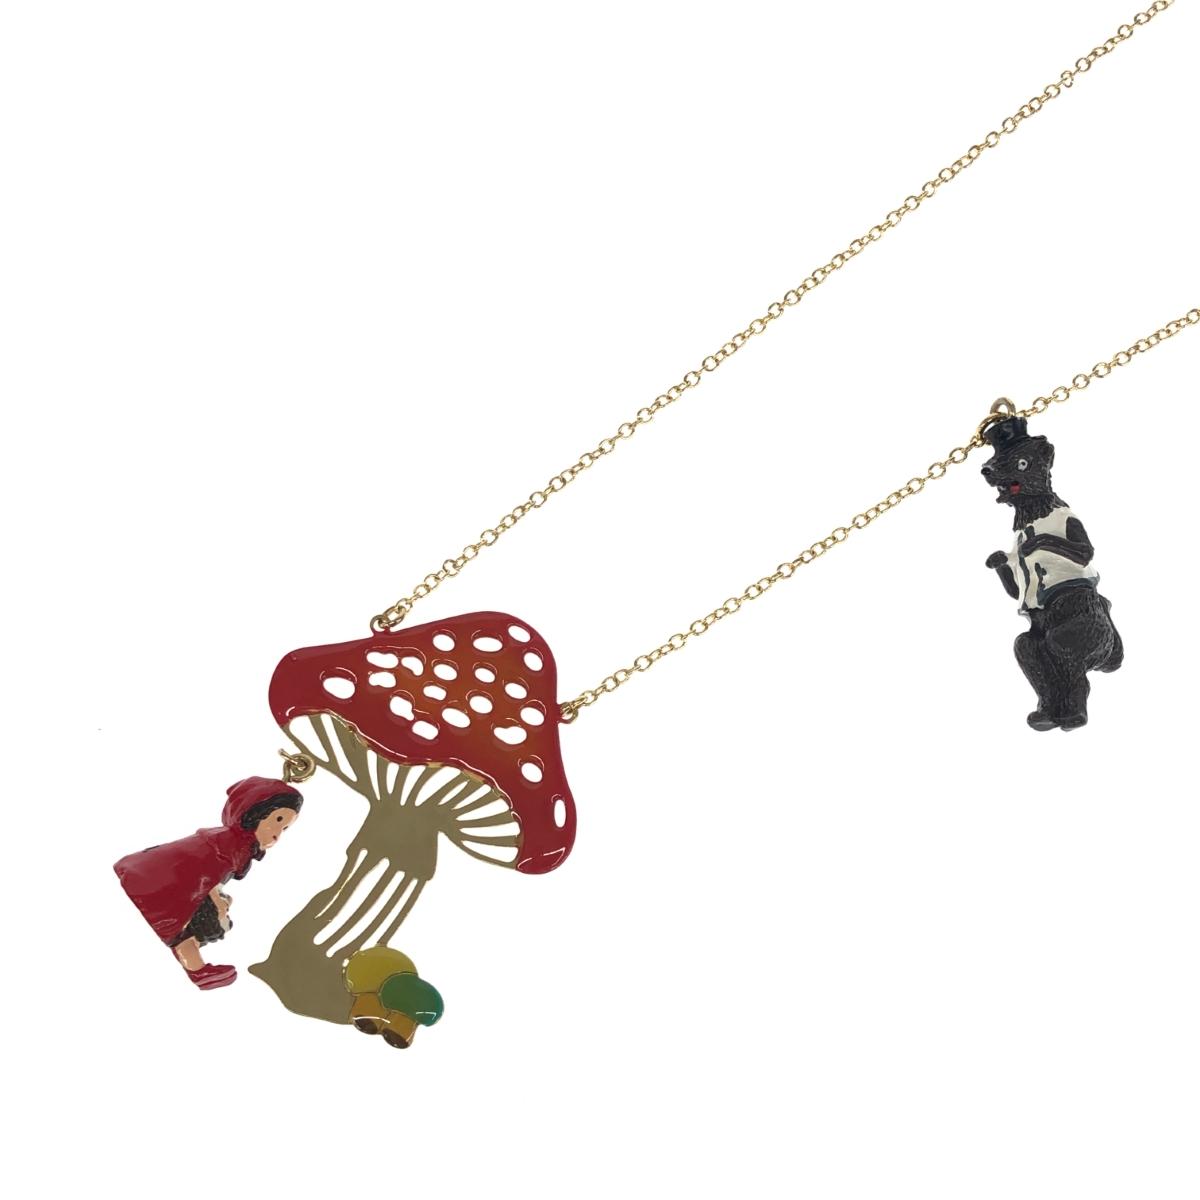 Les Nereides レネレイド ネックレス 美品 ゴールドカラー 赤ずきんちゃん レディース チョーカー ペンダント accessory アクセサリー 